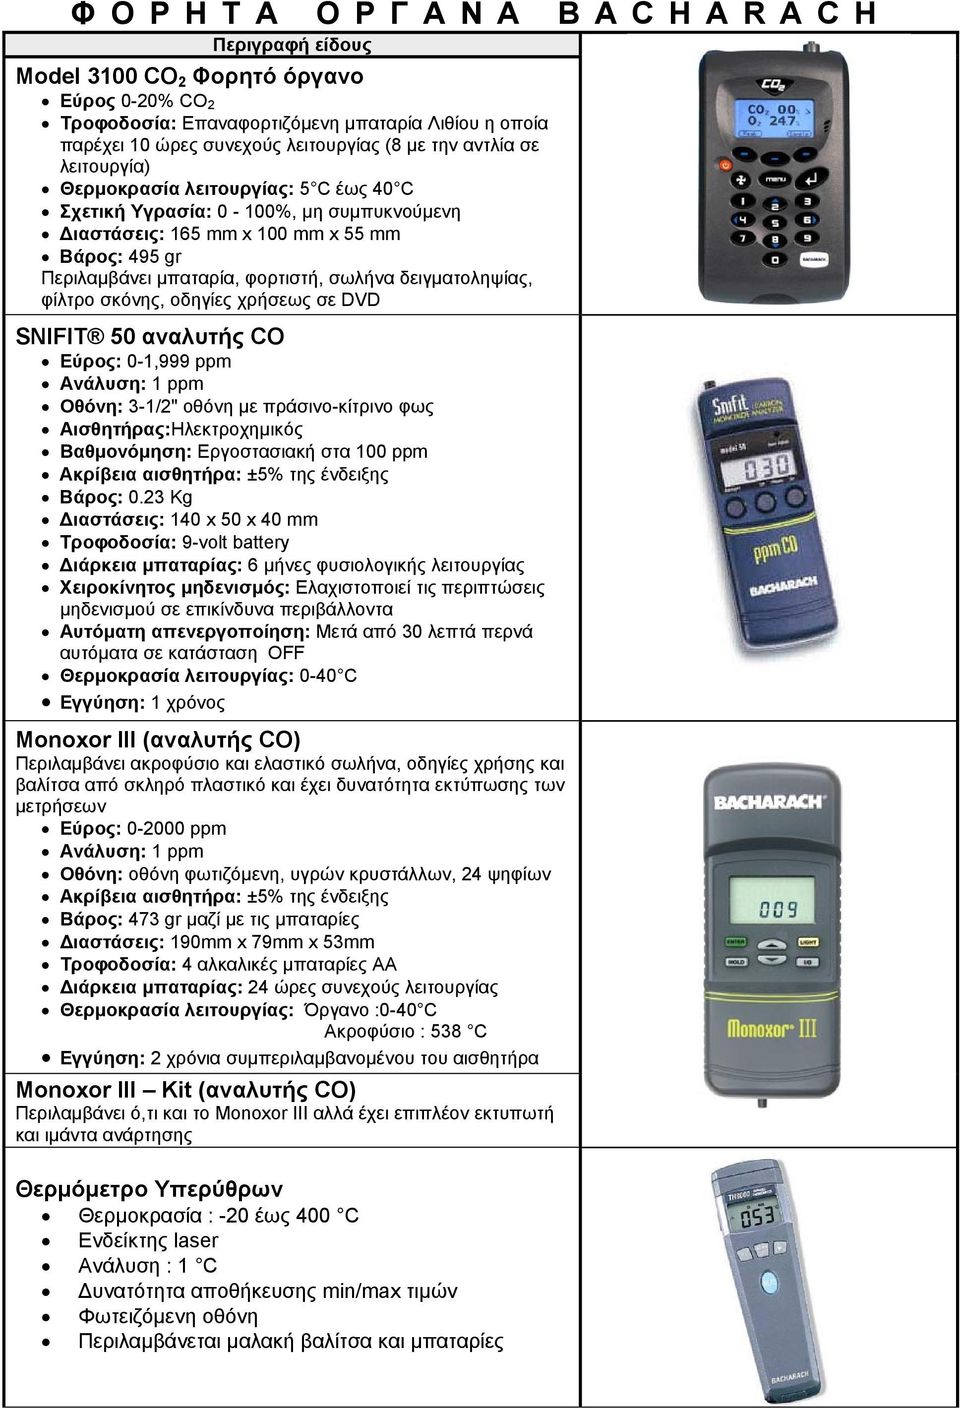 σκόνης, οδηγίες χρήσεως σε DVD SNIFIT 50 αναλυτής CO Εύρος: 0-1,999 ppm Ανάλυση: 1 ppm Οθόνη: 3-1/2" οθόνη με πράσινο-κίτρινο φως Αισθητήρας:Ηλεκτροχημικός Βαθμονόμηση: Εργοστασιακή στα 100 ppm